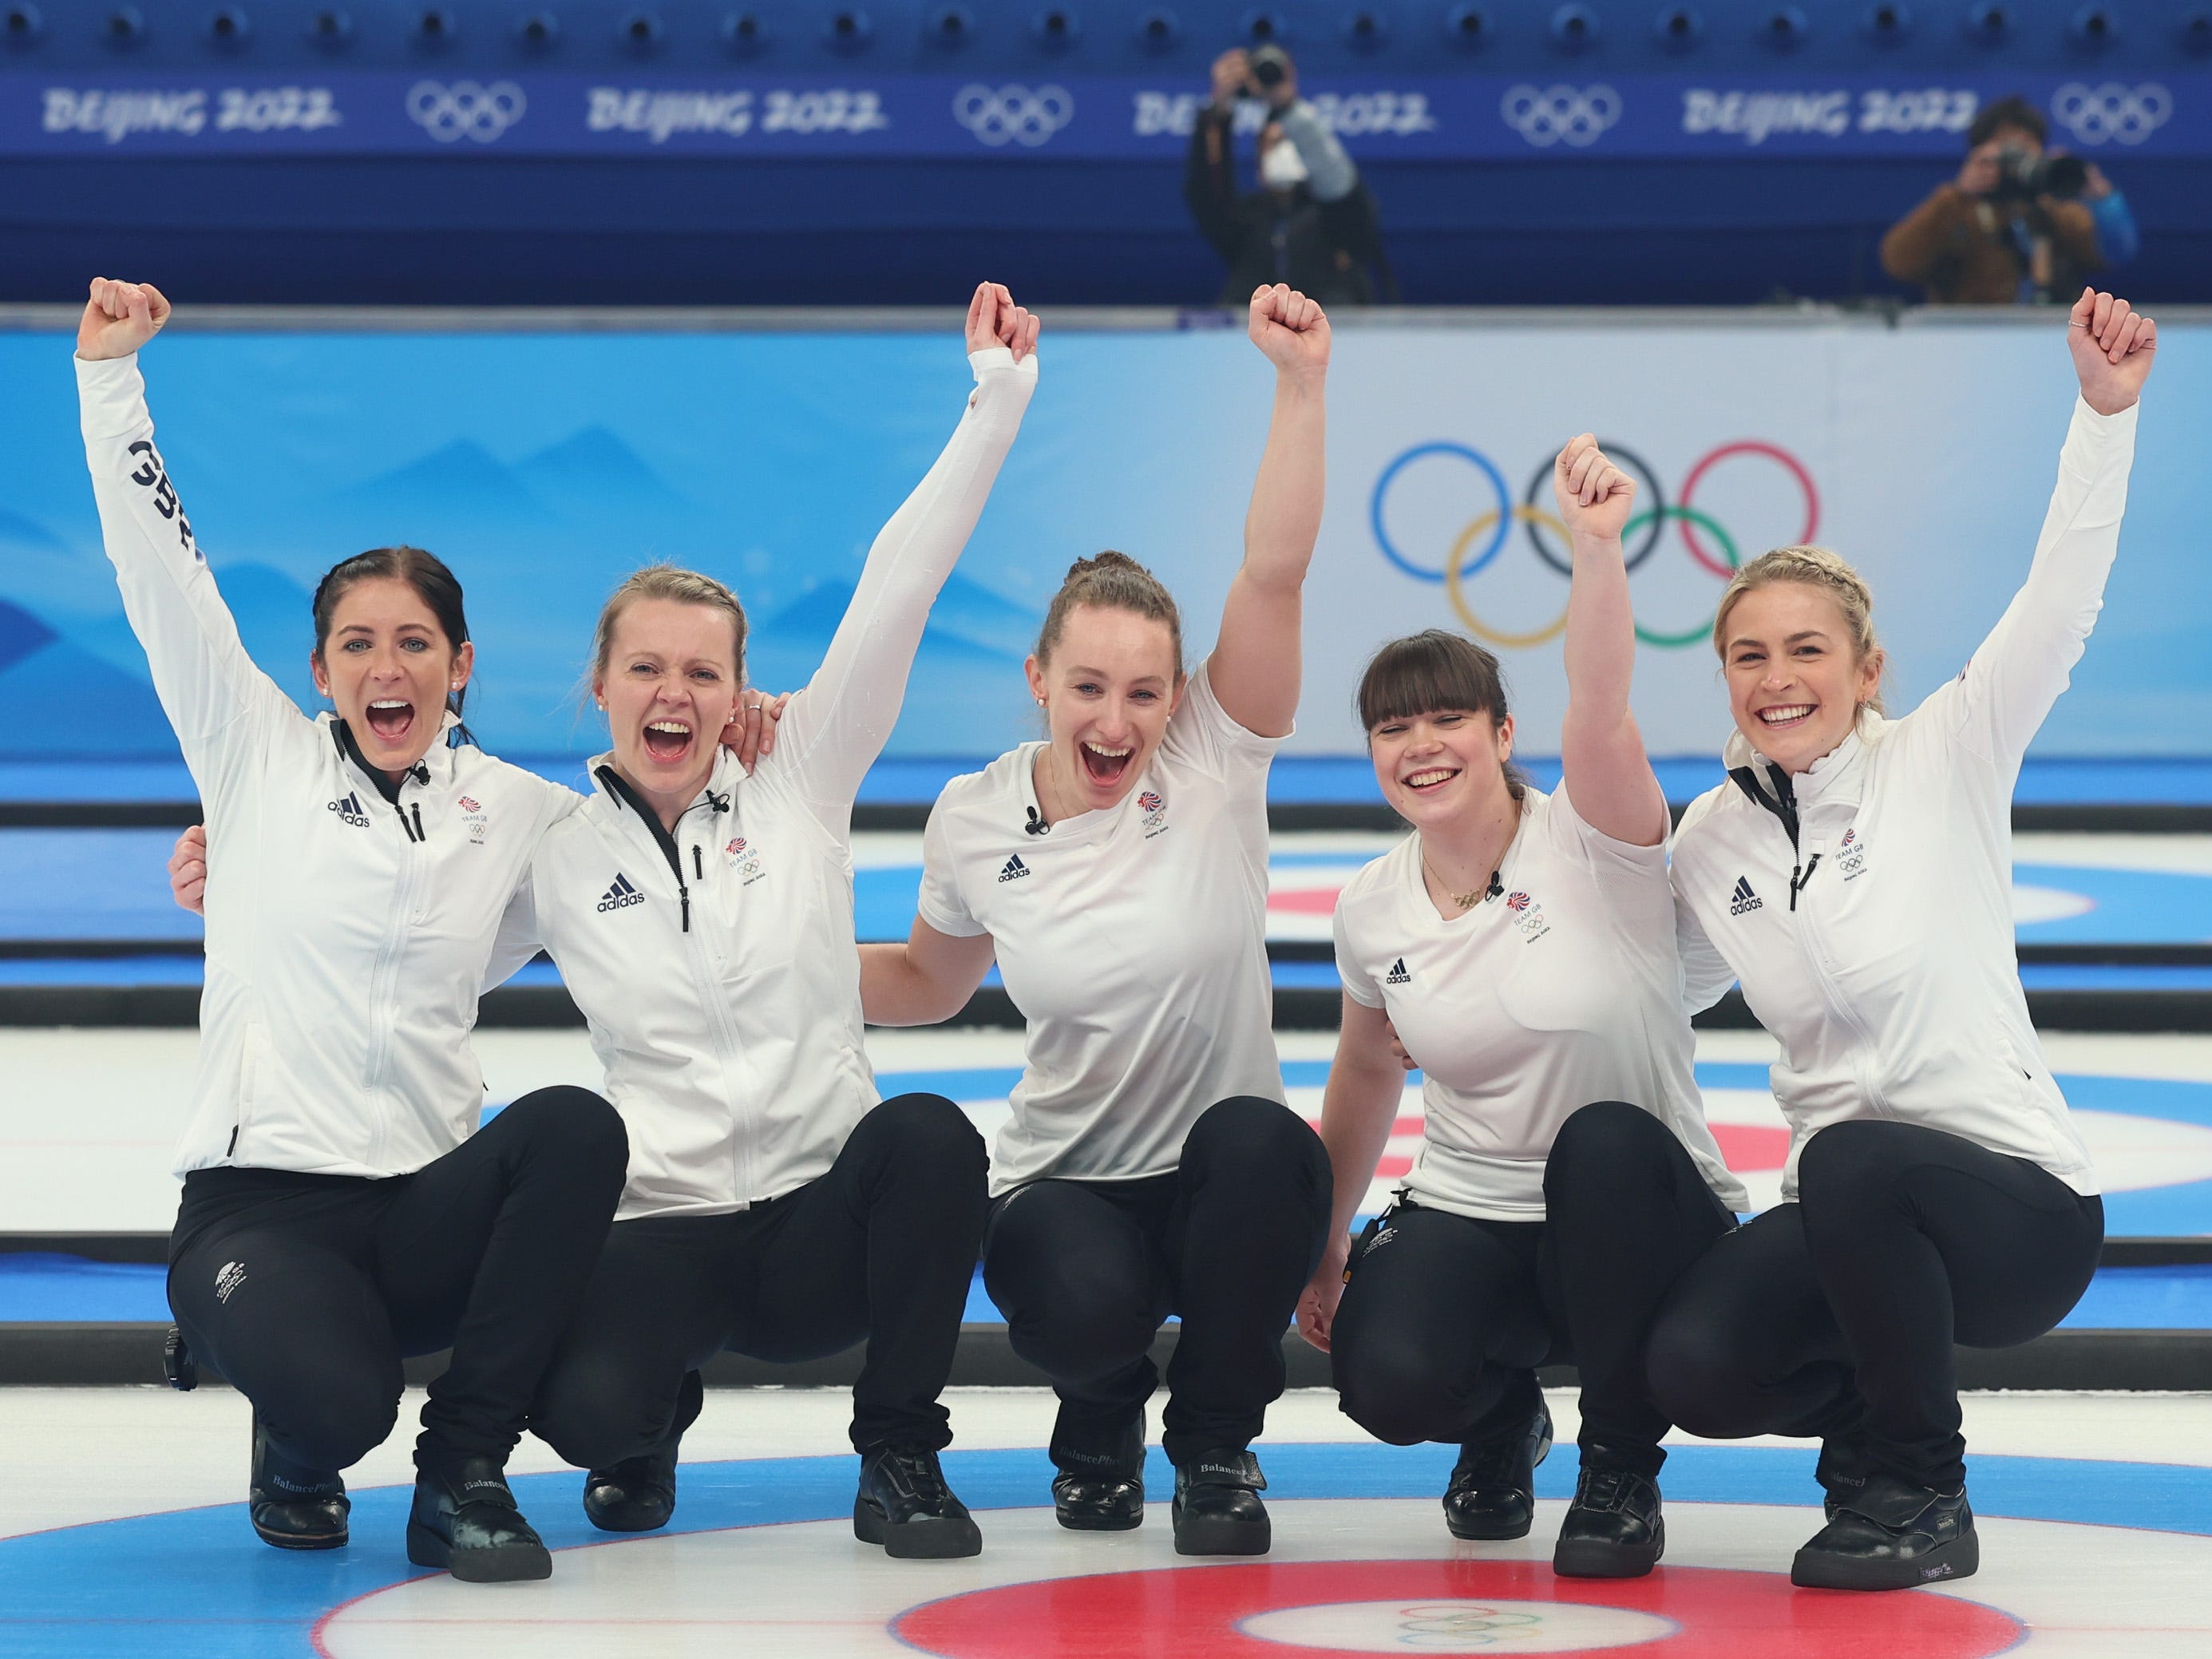 Team Great Britain feiert nach dem Sieg über Team Japan im Spiel um die Goldmedaille der Frauen